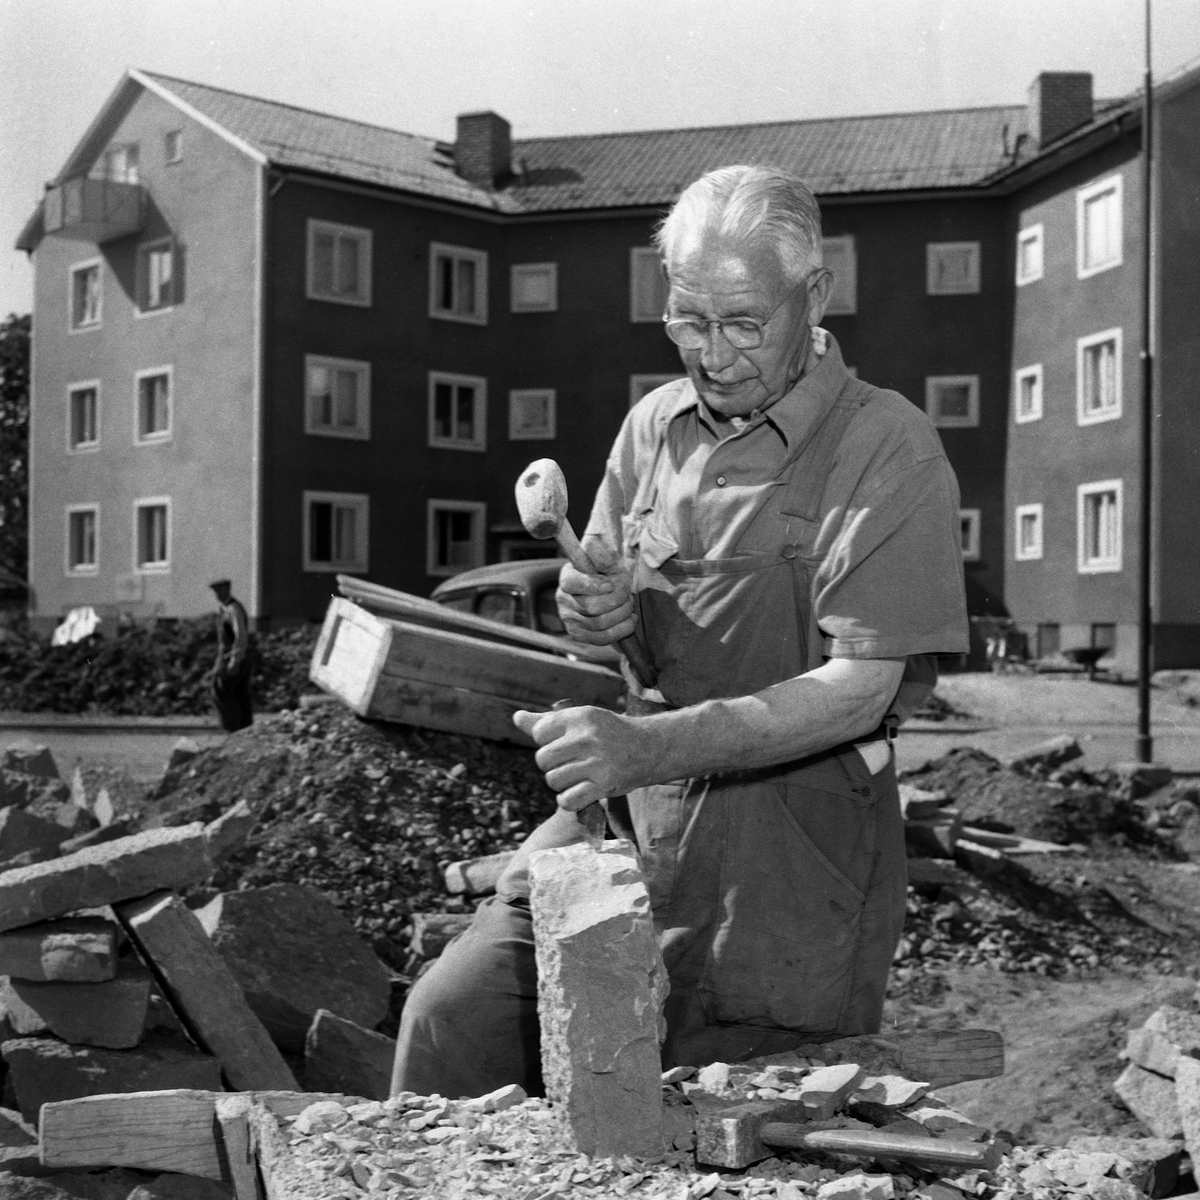 Värmeböljan i början av juni 1953. Stenhuggare Knut Åberg arbetar vid stjärnhusen i Fridhem. 

...

385 bilder om Linköping på 1950-talet från tidningen Östgötens arkiv. Framtidstro och optimism är ord som sammanfattar Linköping på femtiotalet. Årtiondet innebar satsningar för att förbättra linköpingsbornas livsvillkor. Bostadsfrågan och trafiklösningarna dominerade den lokalpolitiska agendan.
Bilderna digitaliserades år 2013.